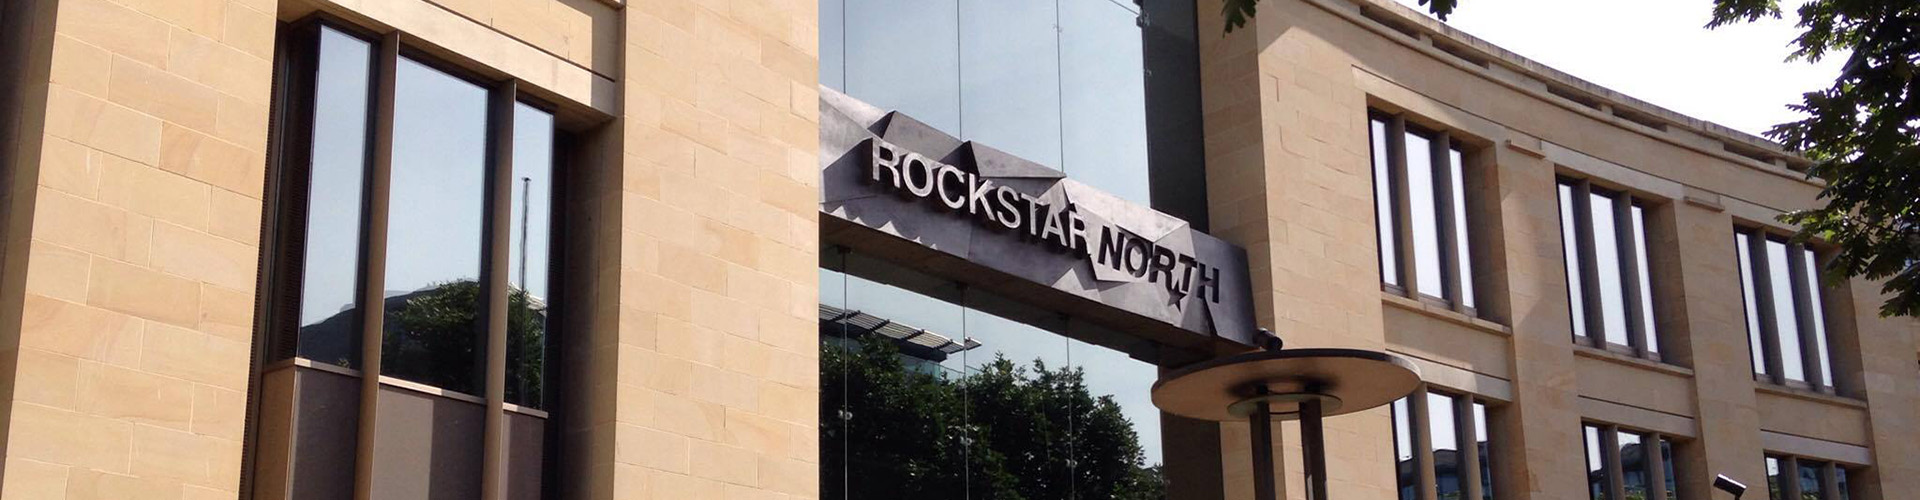 Rockstar North - Edinburgh : r/reddeadredemption